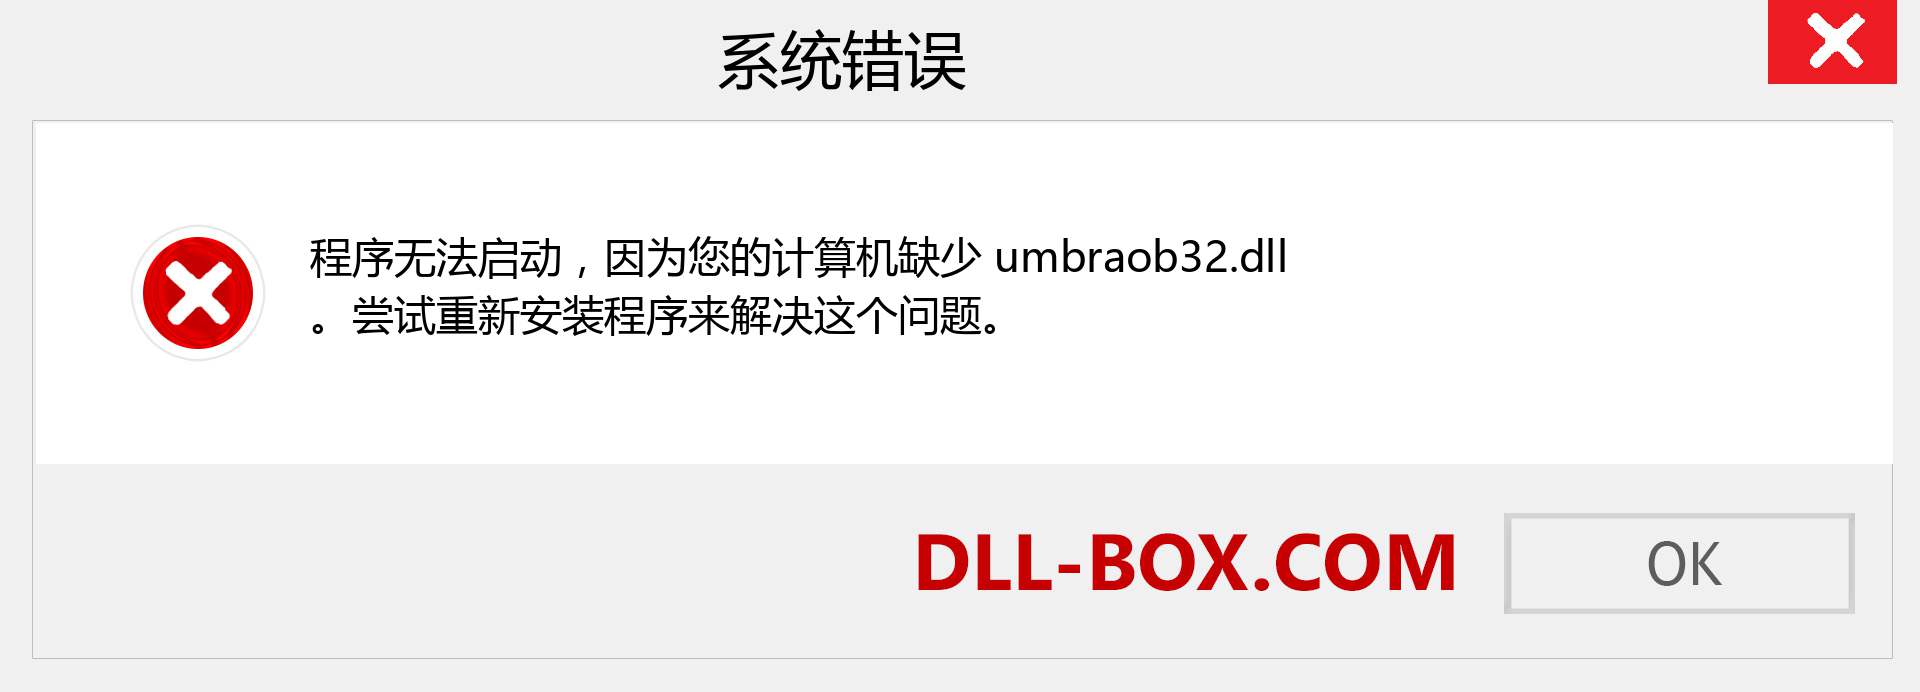 umbraob32.dll 文件丢失？。 适用于 Windows 7、8、10 的下载 - 修复 Windows、照片、图像上的 umbraob32 dll 丢失错误